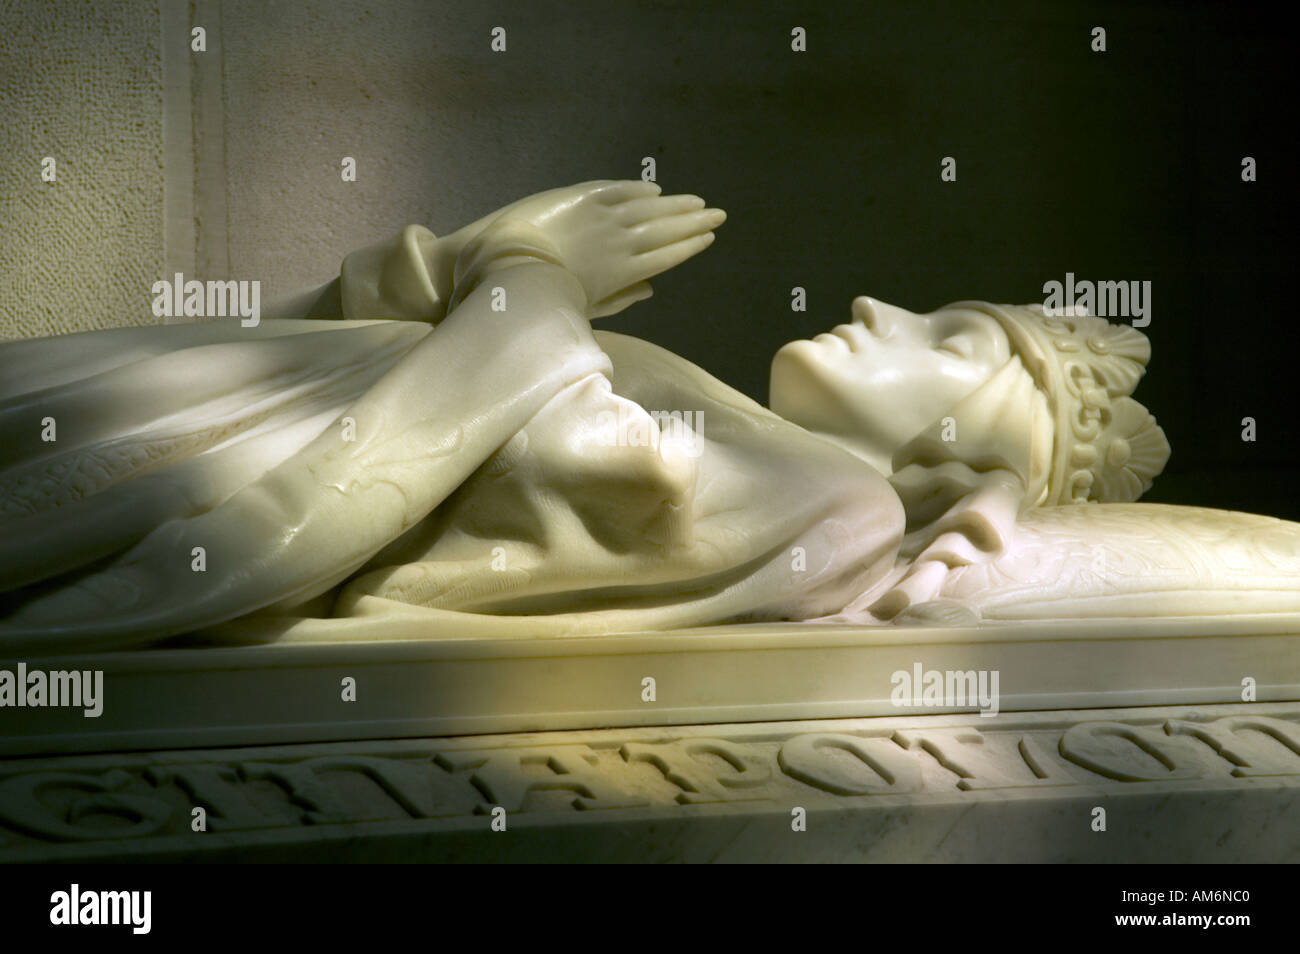 Le sarcophage de la Reine Jadwiga faite de marbre de Carrare la cathédrale du Wawel Cracovie Pologne Banque D'Images